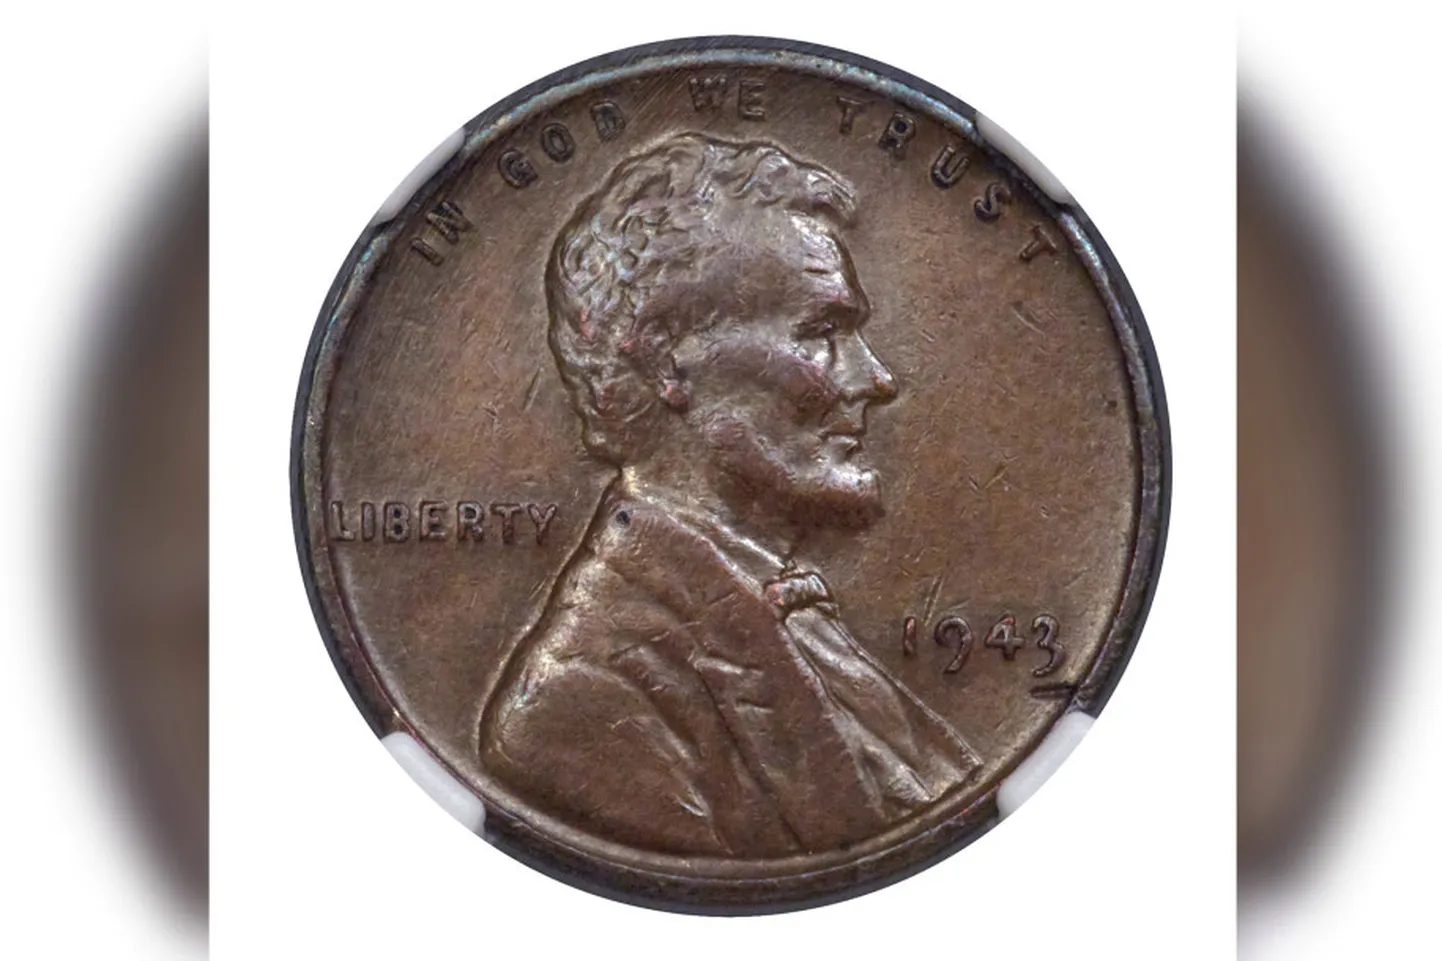 Редкая монета 1943 года была изготовлена из меди, а не стали.